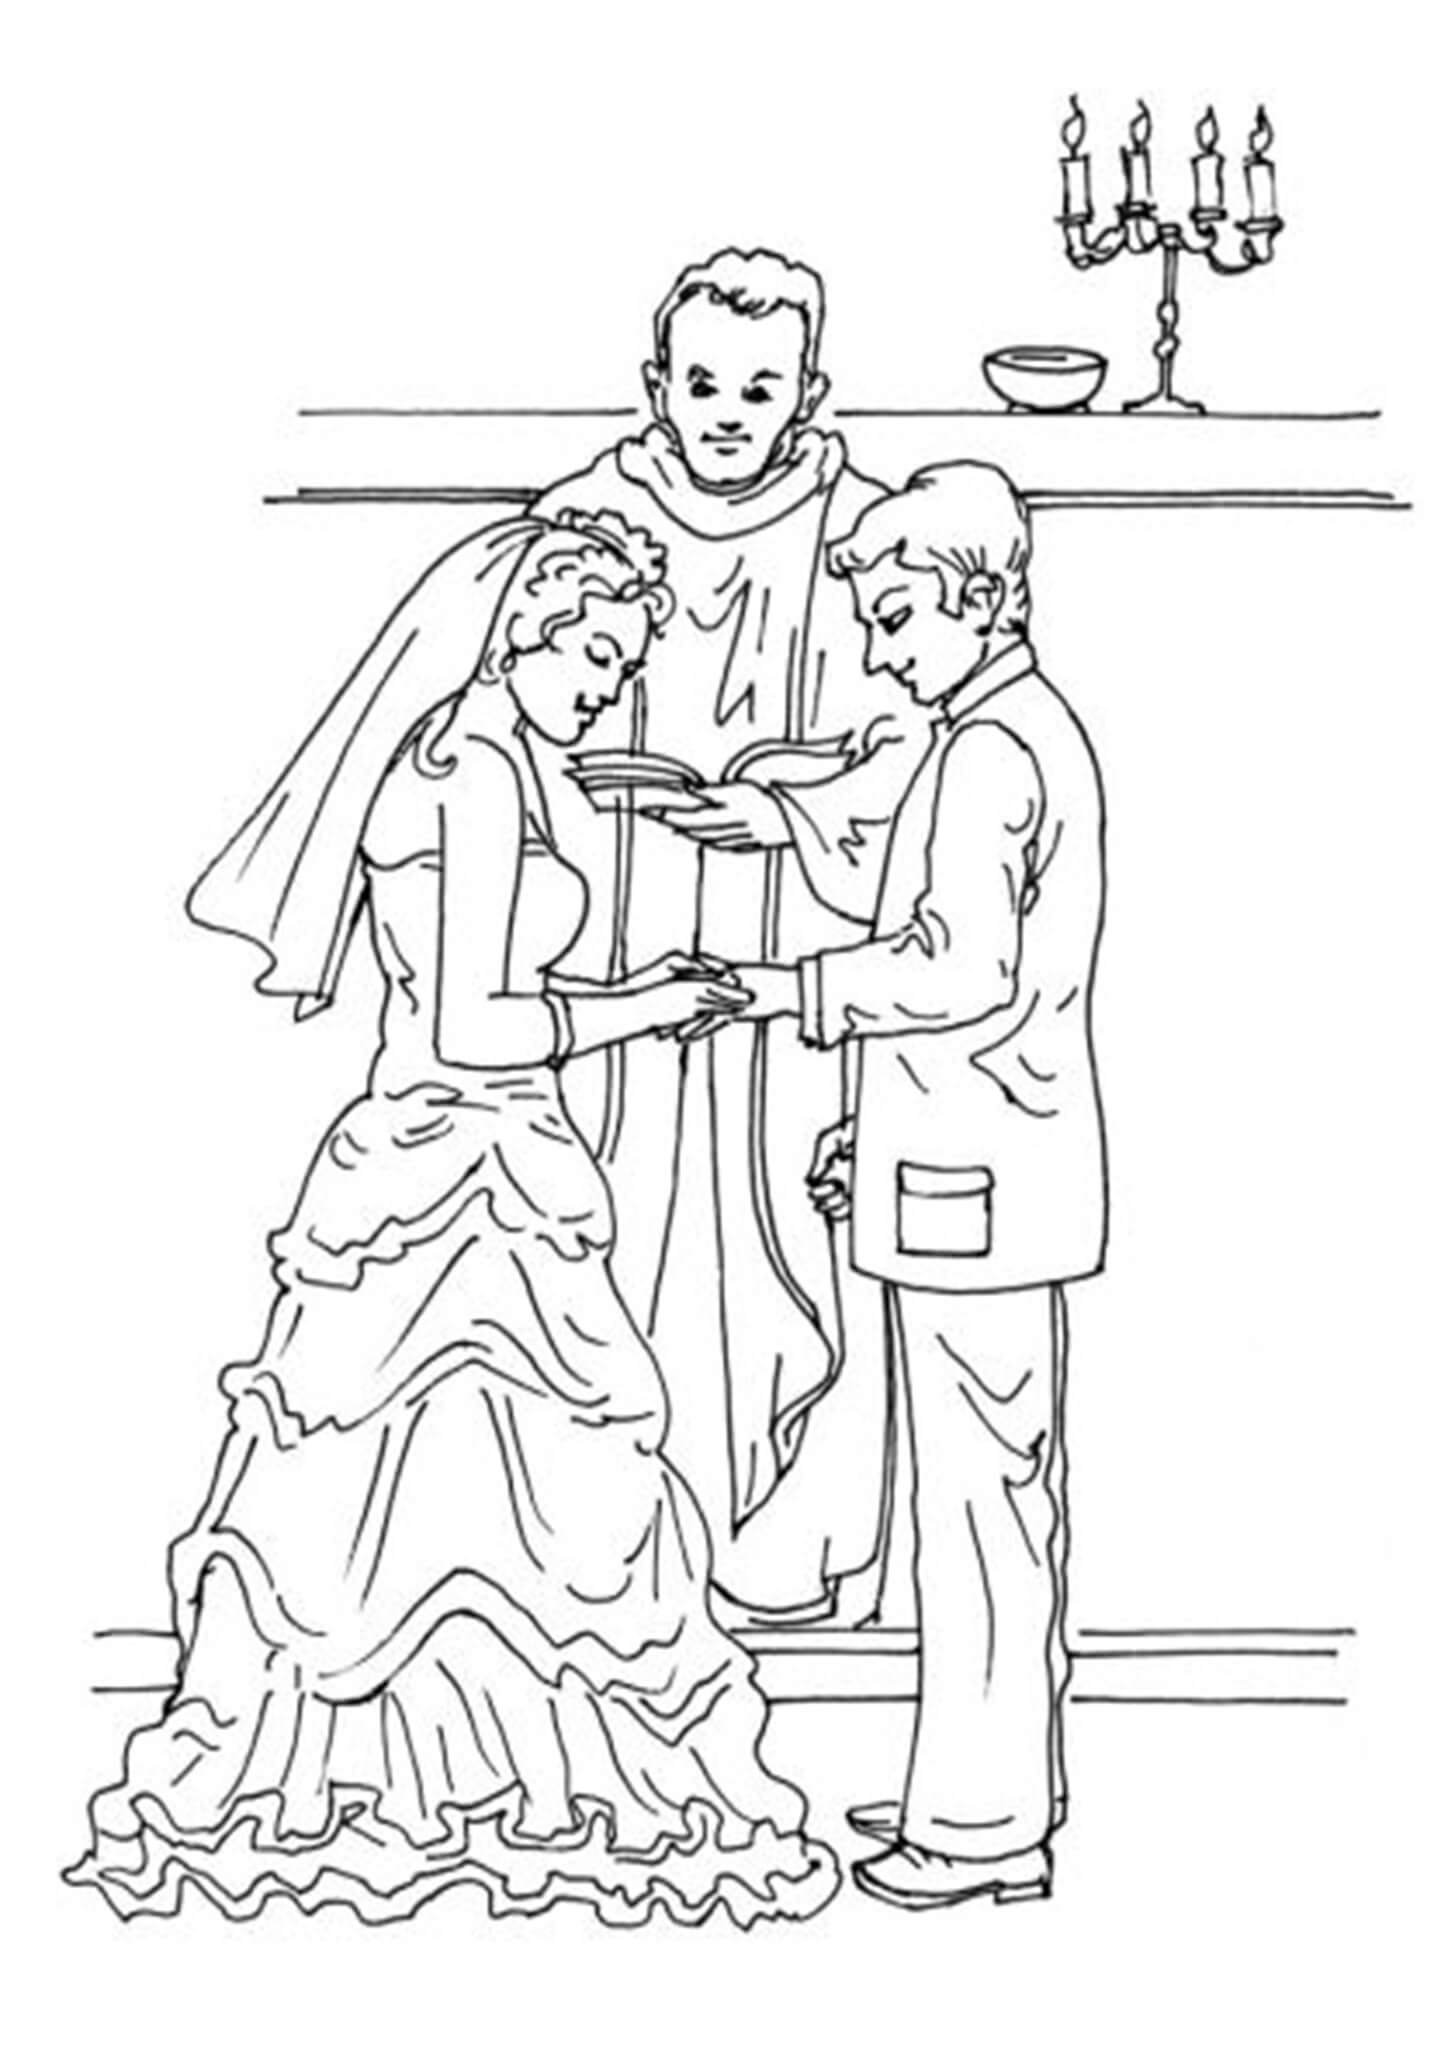 printable-coloring-sheets-wedding-theme